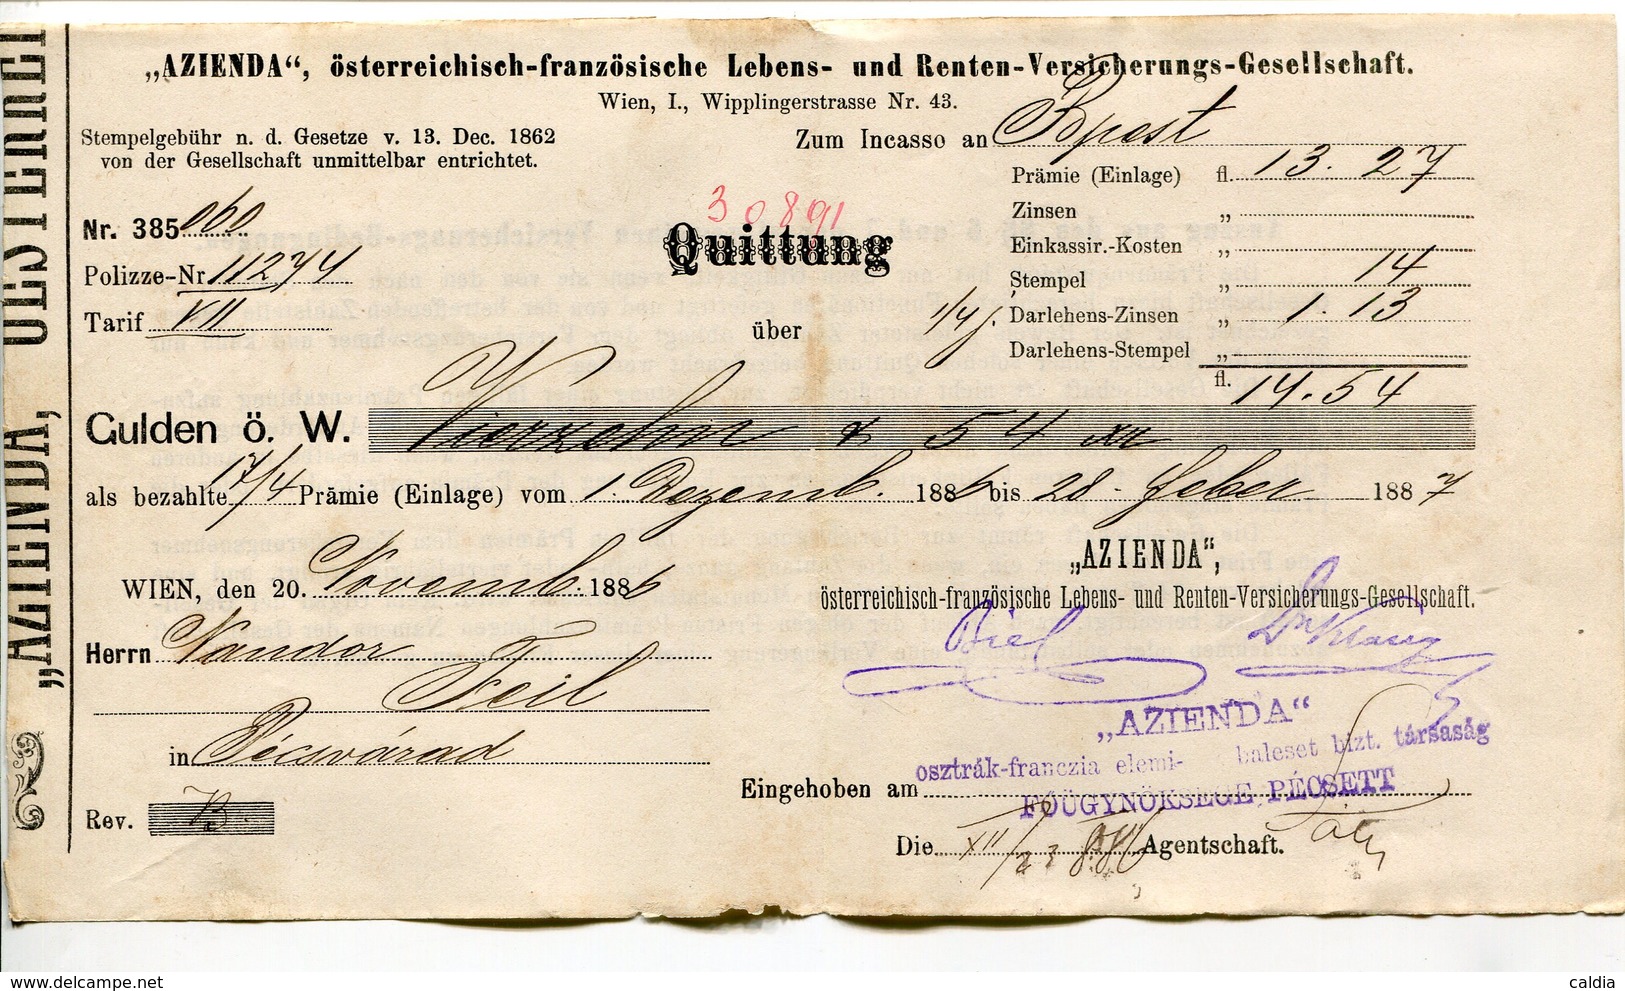 Autriche Austria Österreich Ticket QUITTUNG " AZIENDA " Austria - France Society 1887 # 2 - Österreich